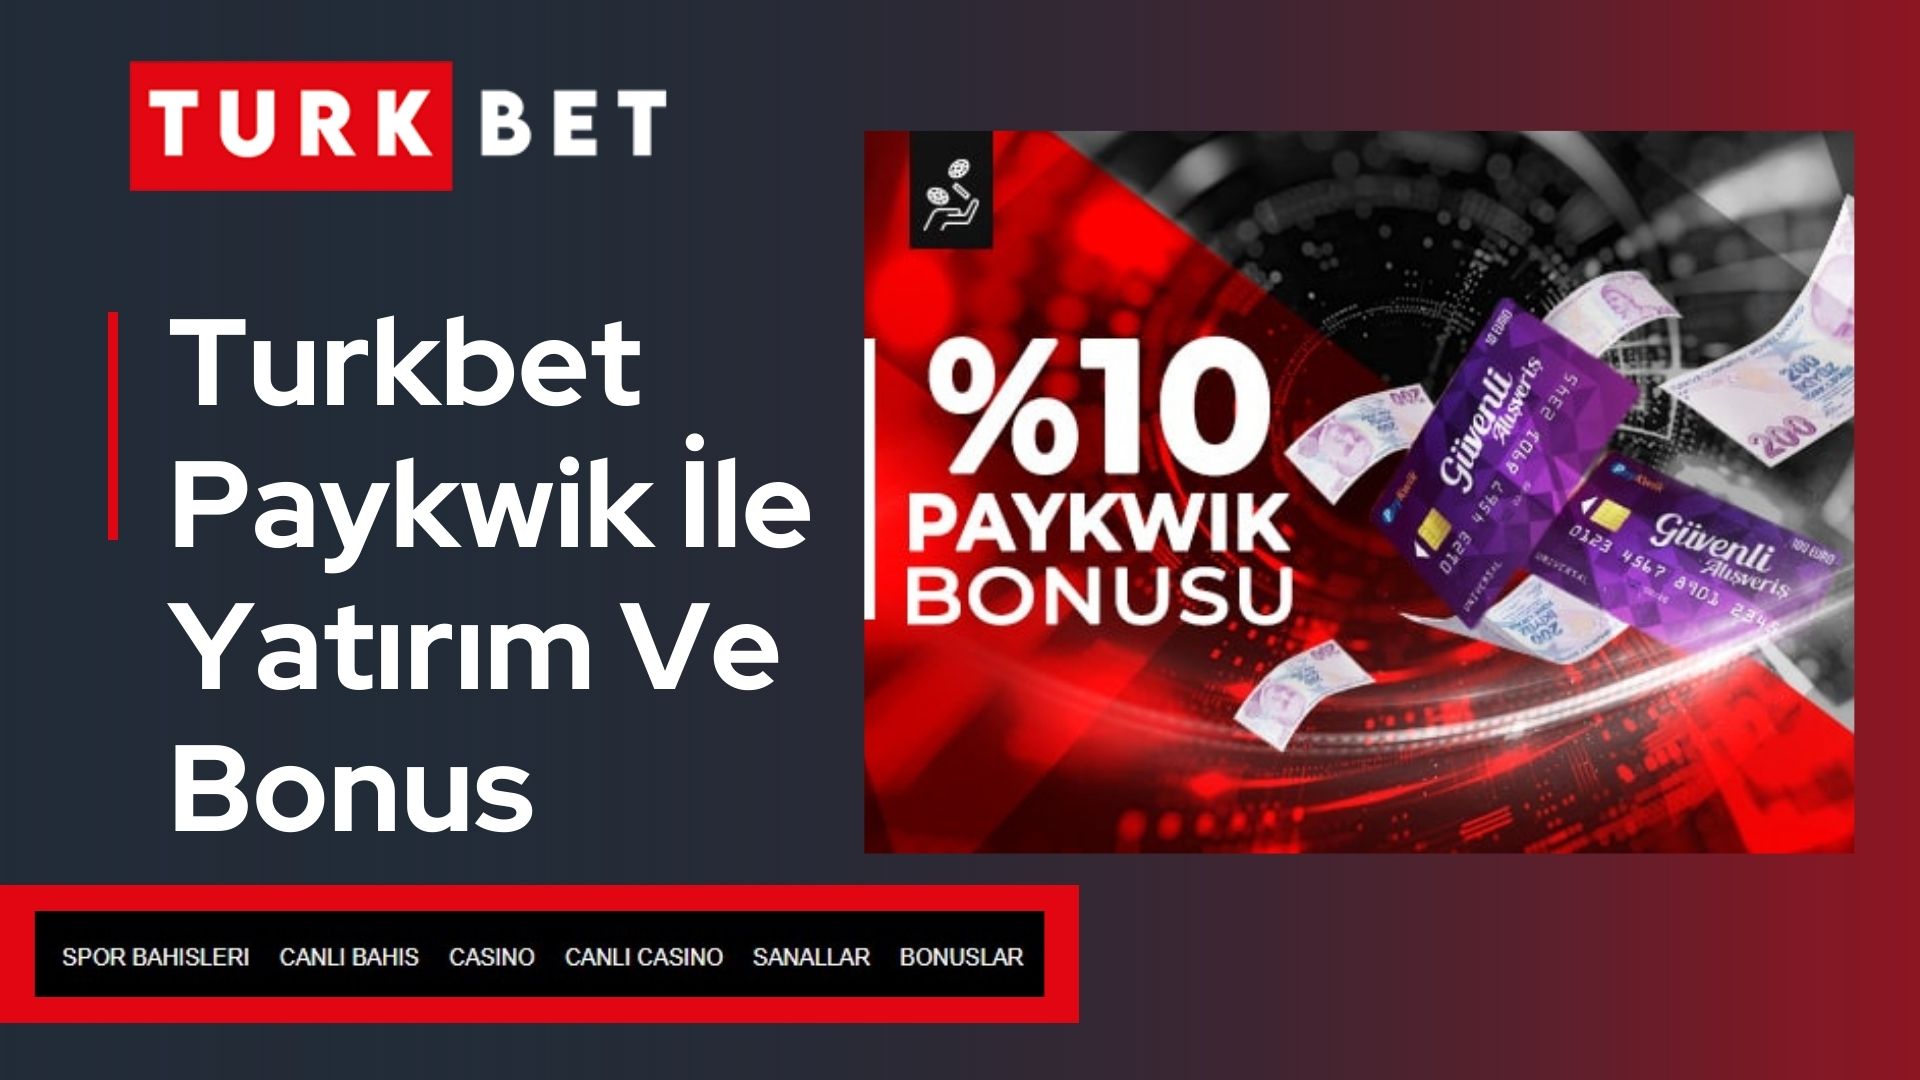 Turkbet Paykwik İle Yatırım Ve Bonus